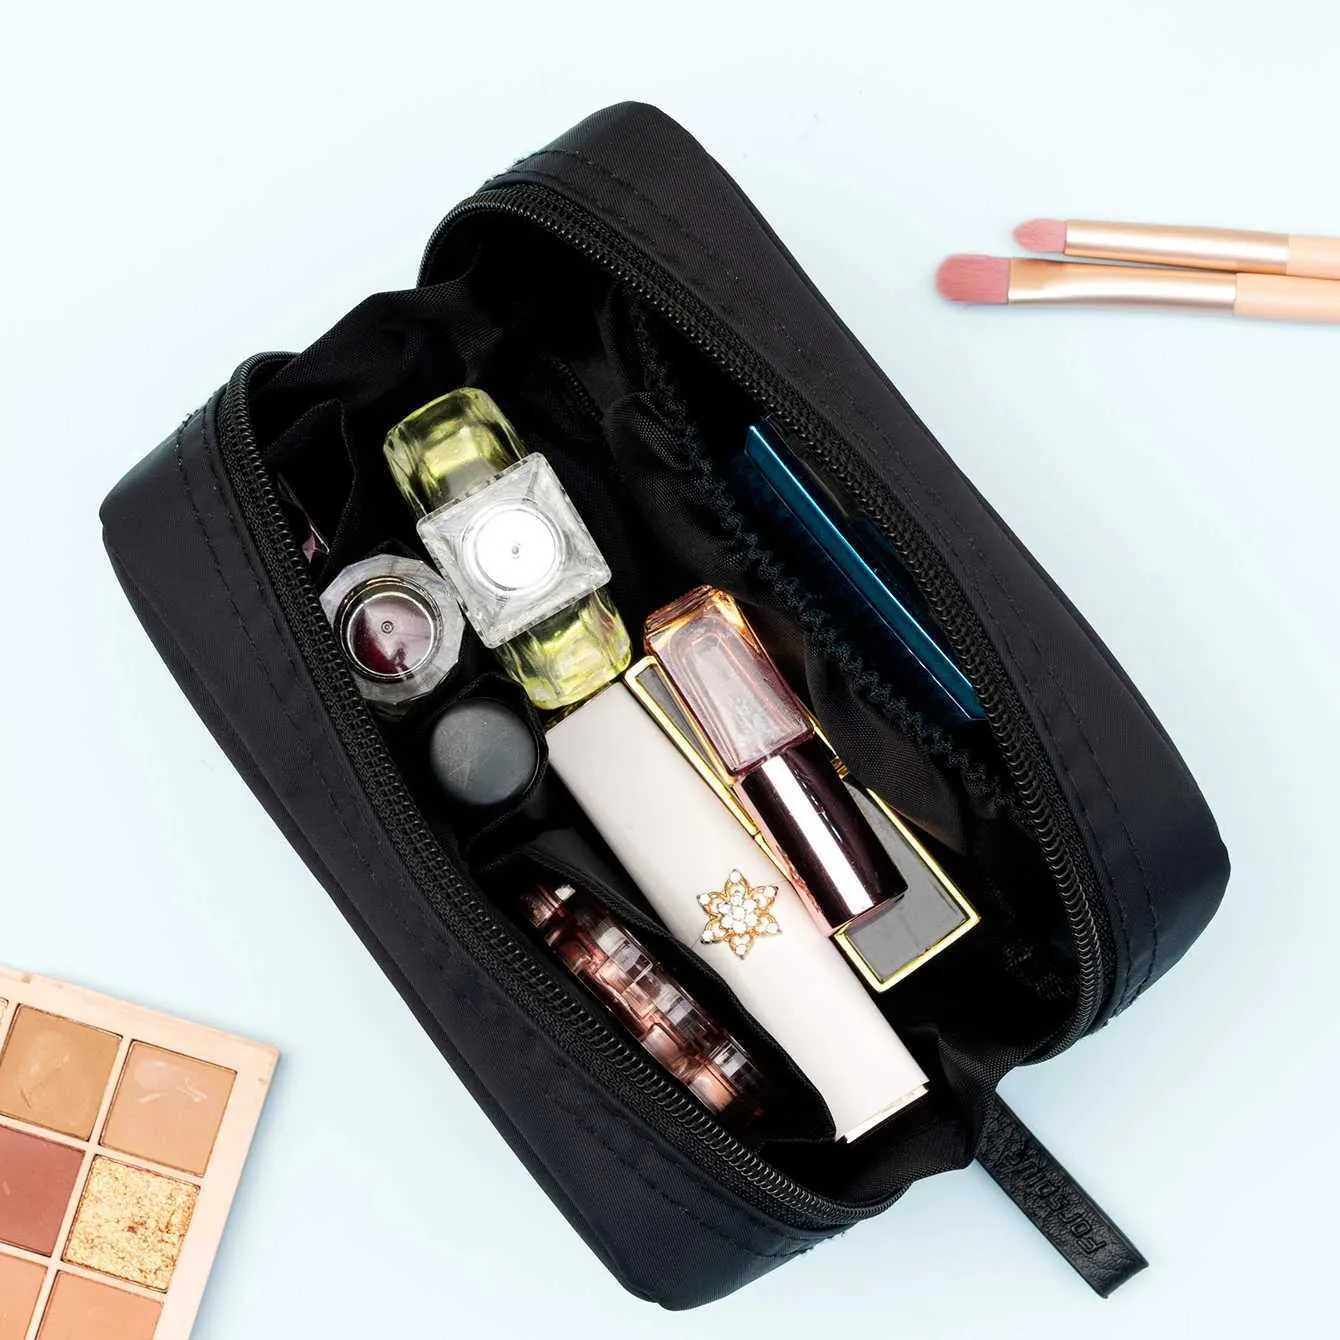 Kosmetischer Organisator multifunktionaler wasserdichtes kleiner Make -up -Beutel mit mehreren Taschen und Reißverschluss - ideal für die Reise und den täglichen Gebrauch Y240503